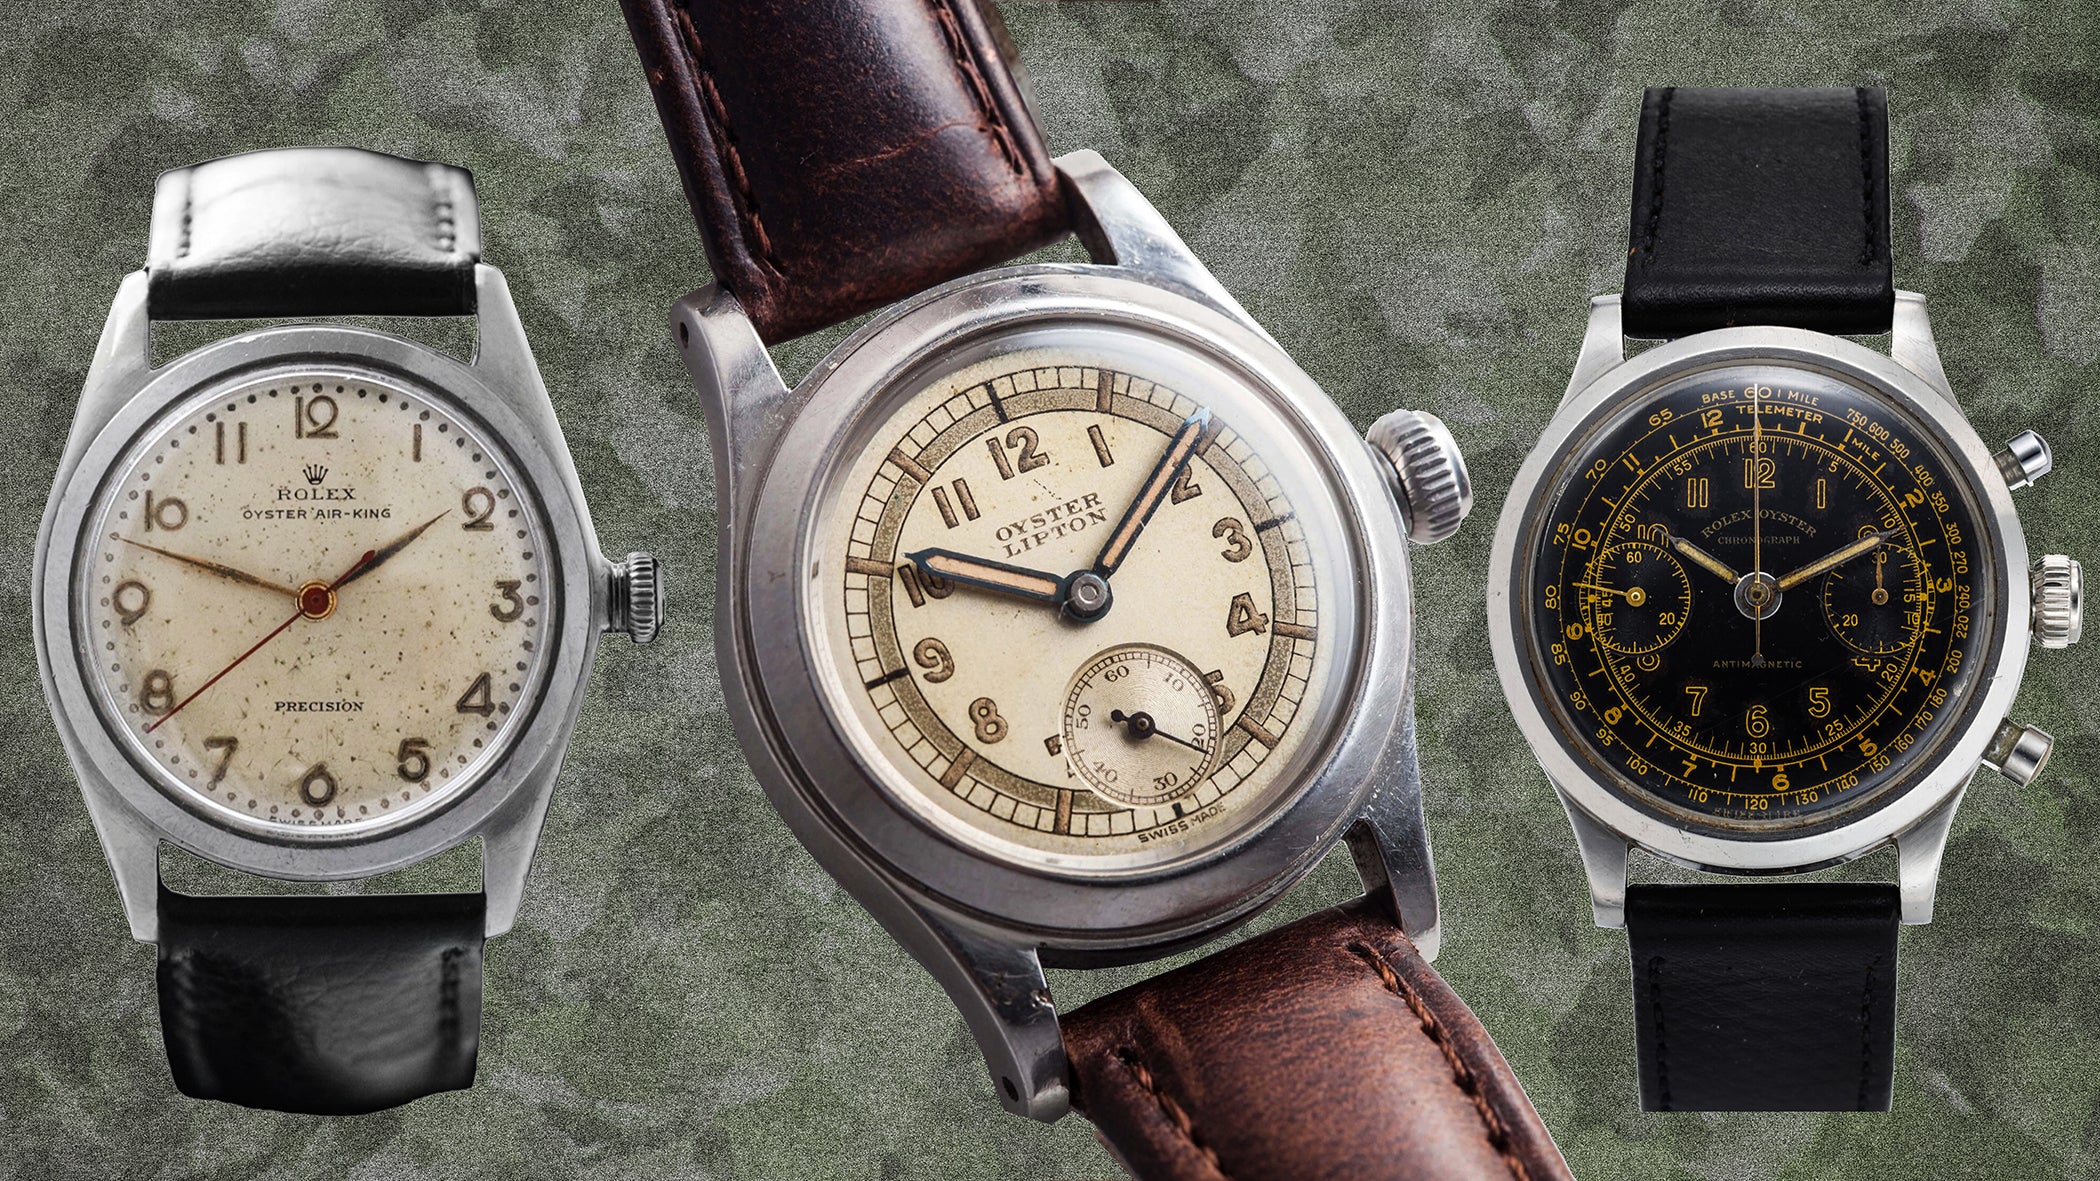 Rolex Watches of World War II